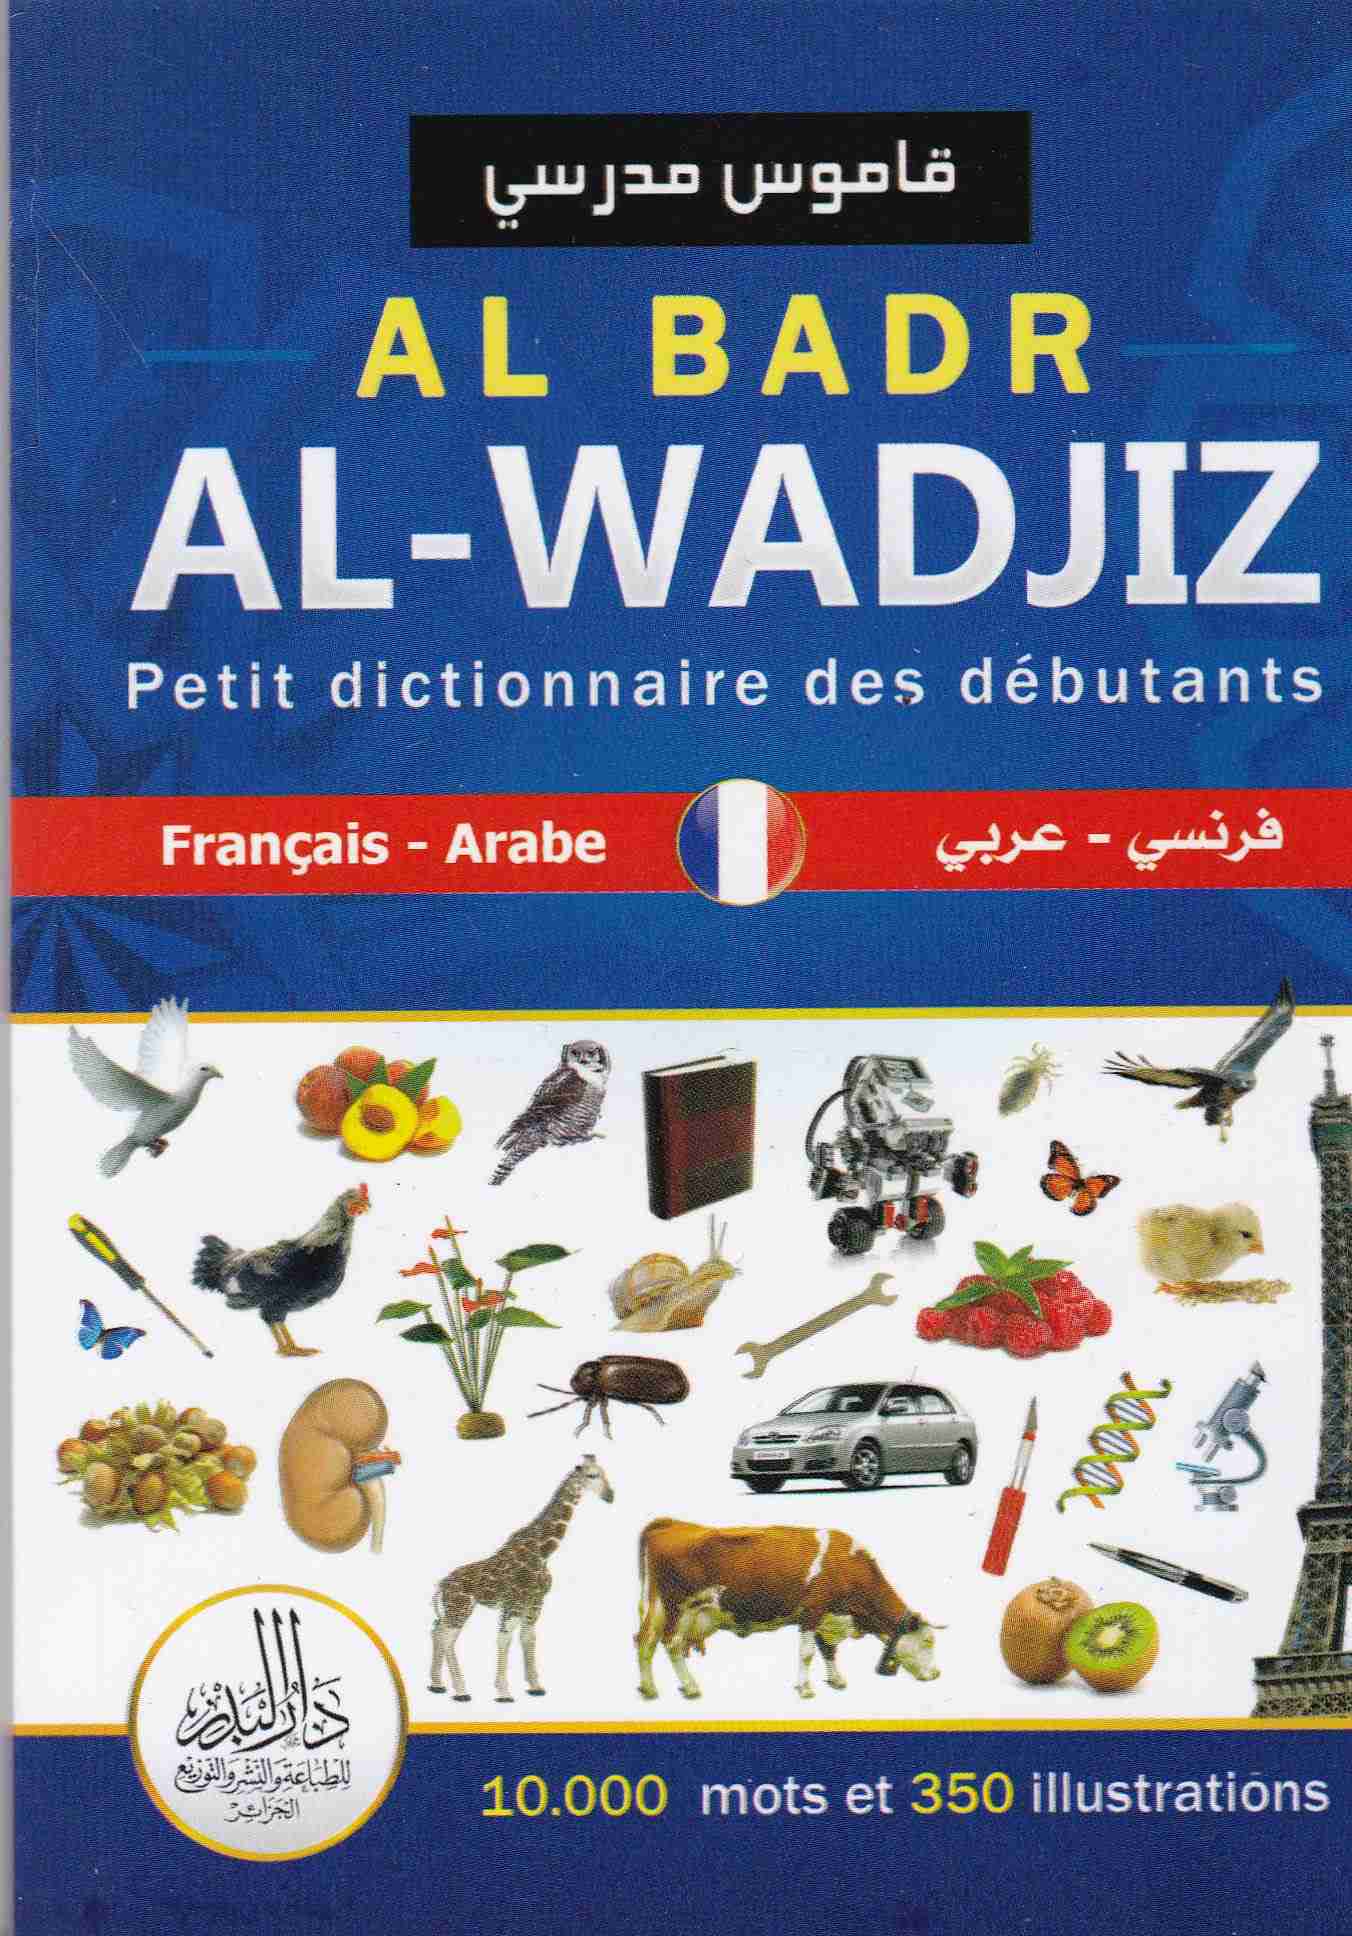 قاموس مدرسي al badr al wadjiz فرنسي-عربي